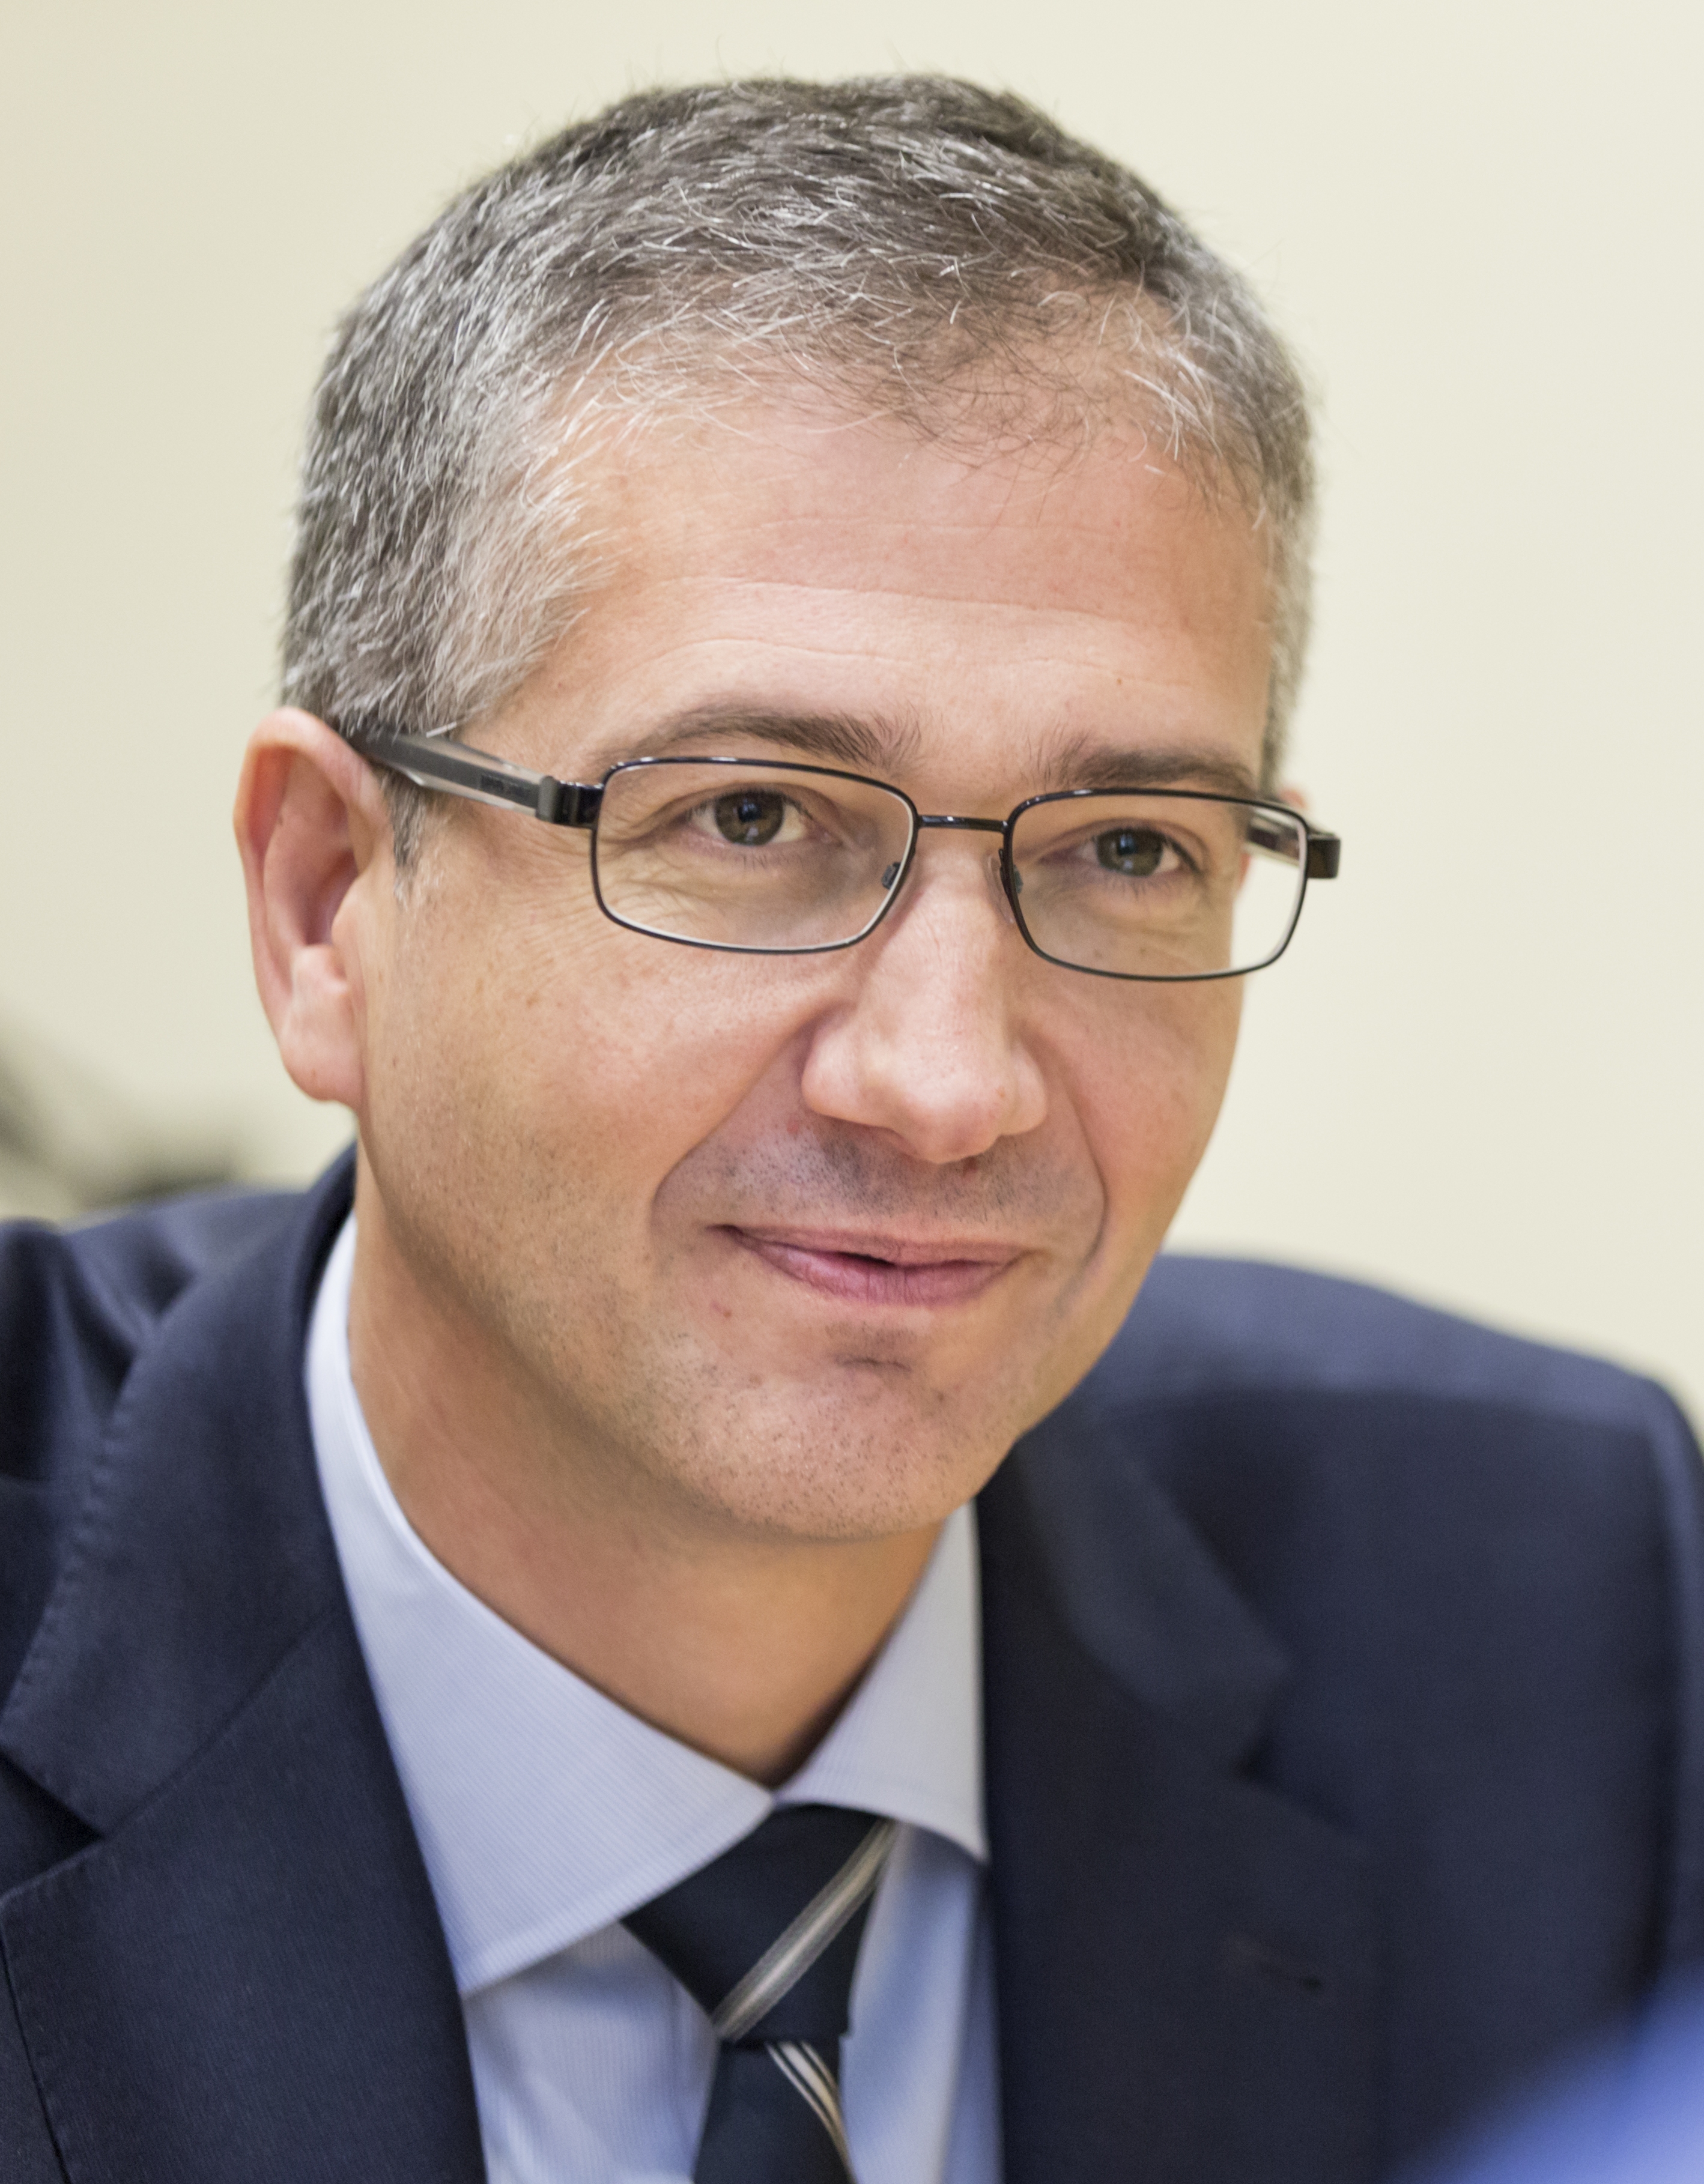 Pablo Hernández de Cos, director general de Economía y Estadística del Banco de España